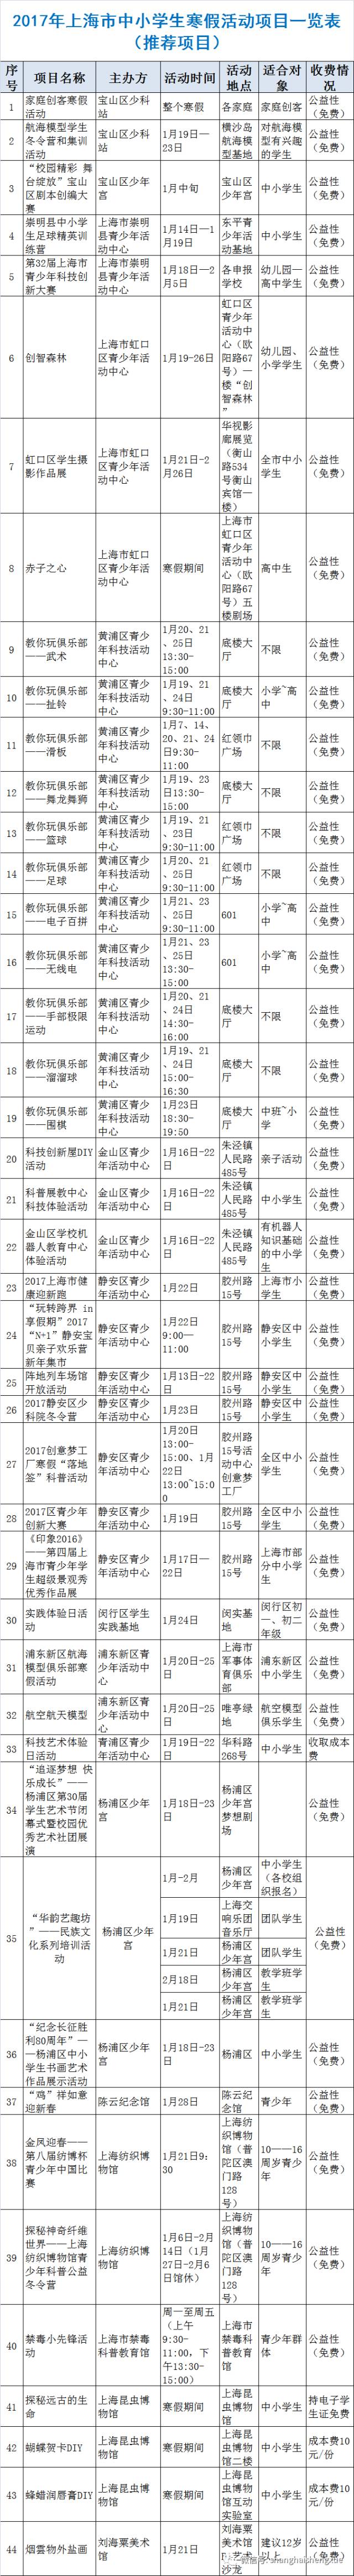 寒假上海近百所学校提供兴趣班 覆盖小初高且全免费